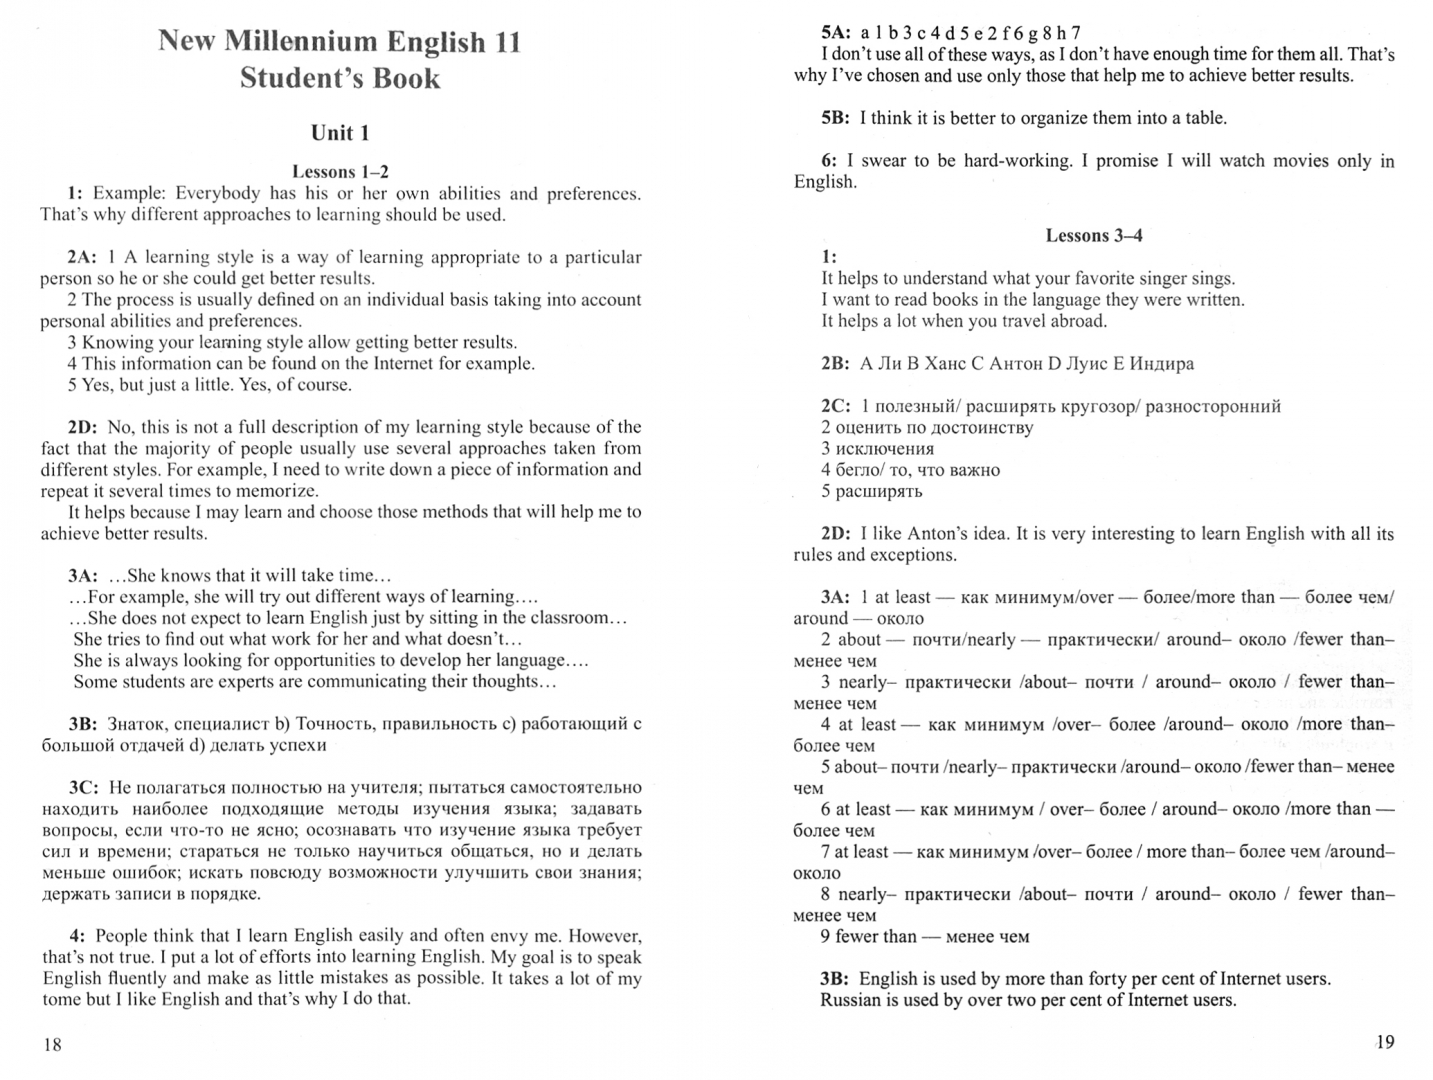 Иллюстрация 1 из 12 для Английский язык. New Millennium English. Решебник. 11 класс | Лабиринт - книги. Источник: Лабиринт